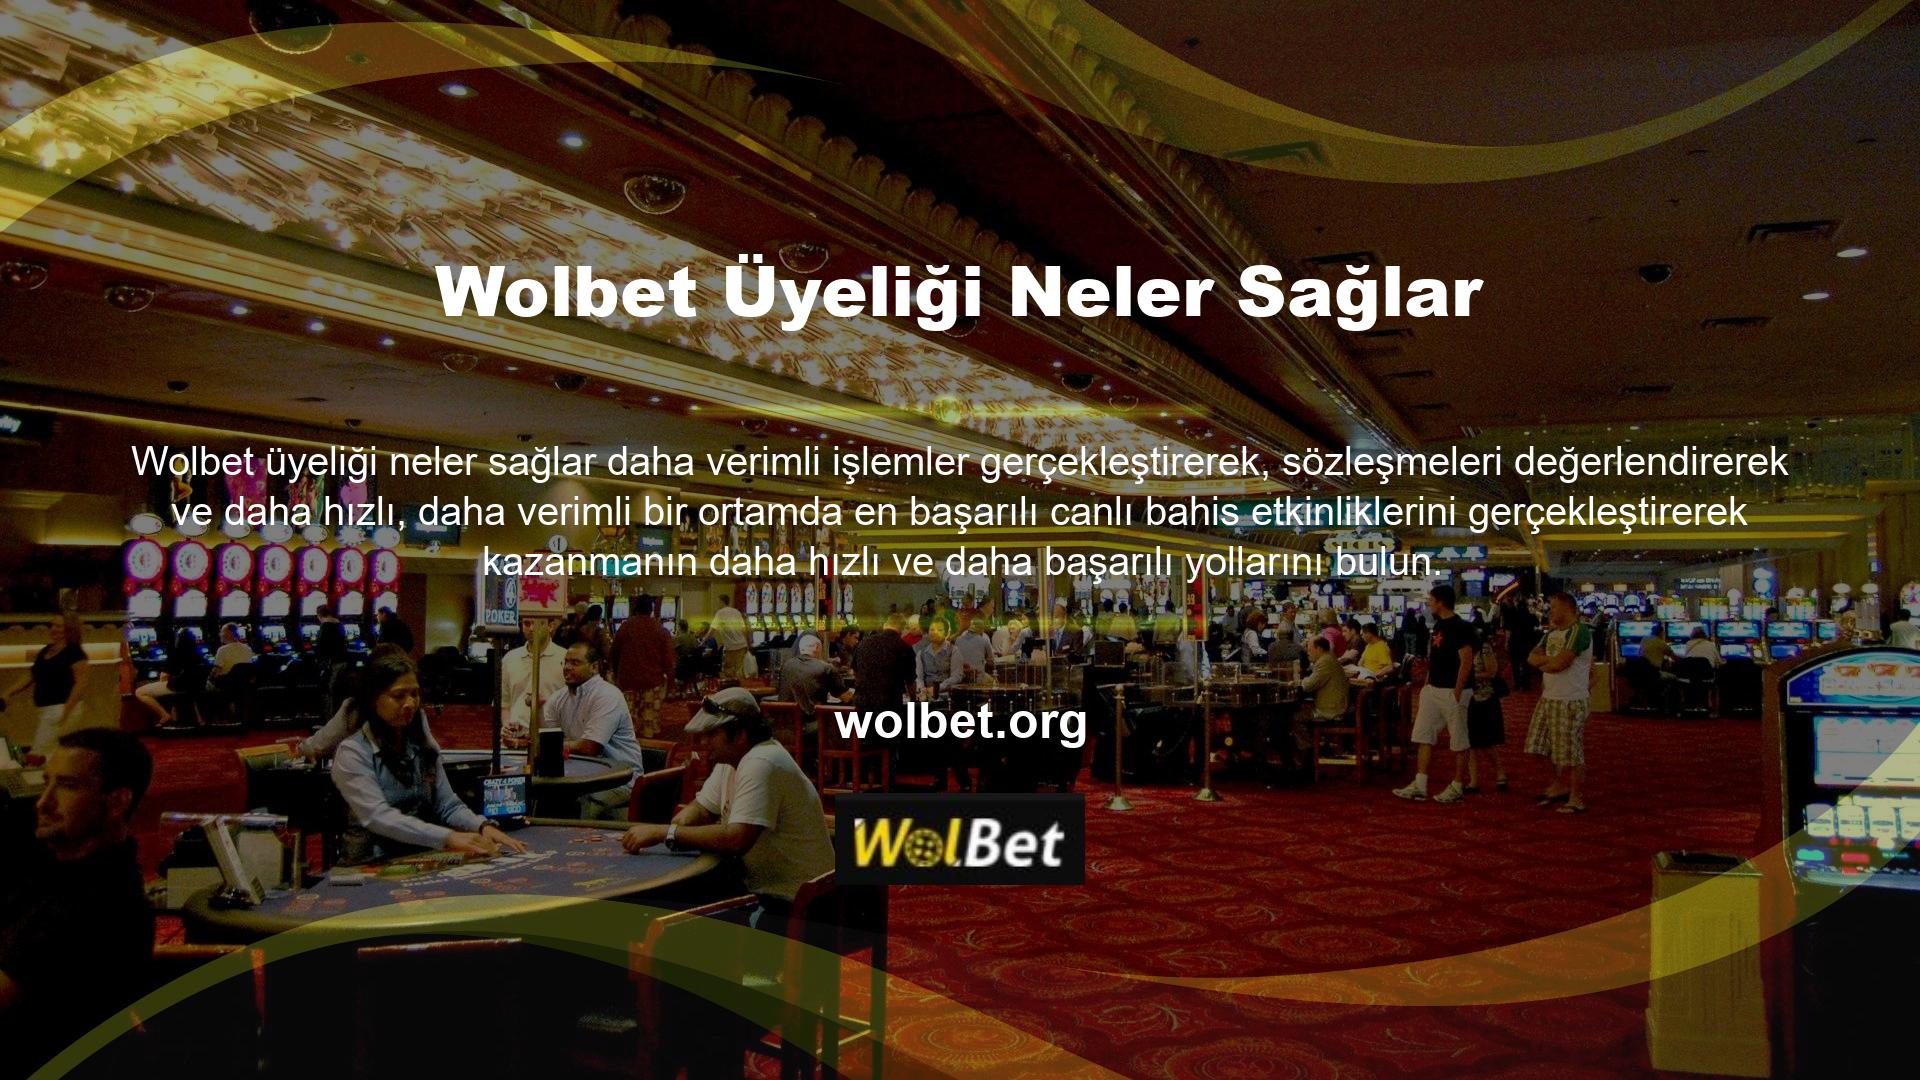 Wolbet yeni faaliyete geçmiş bir online casino sitesidir